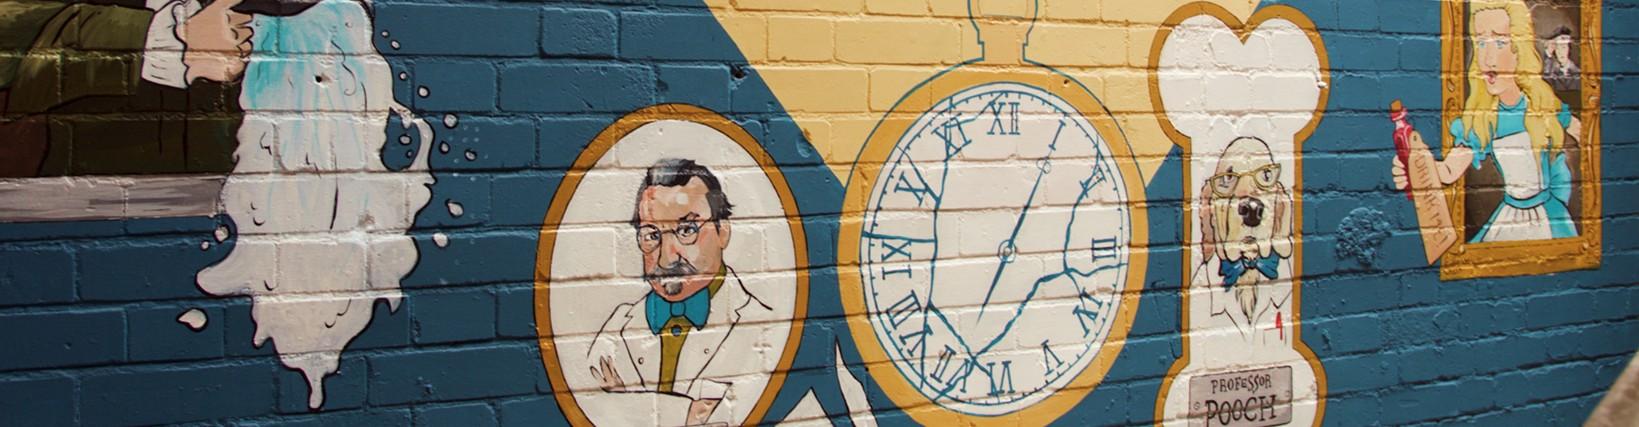 Photo of a mural of a broken watch